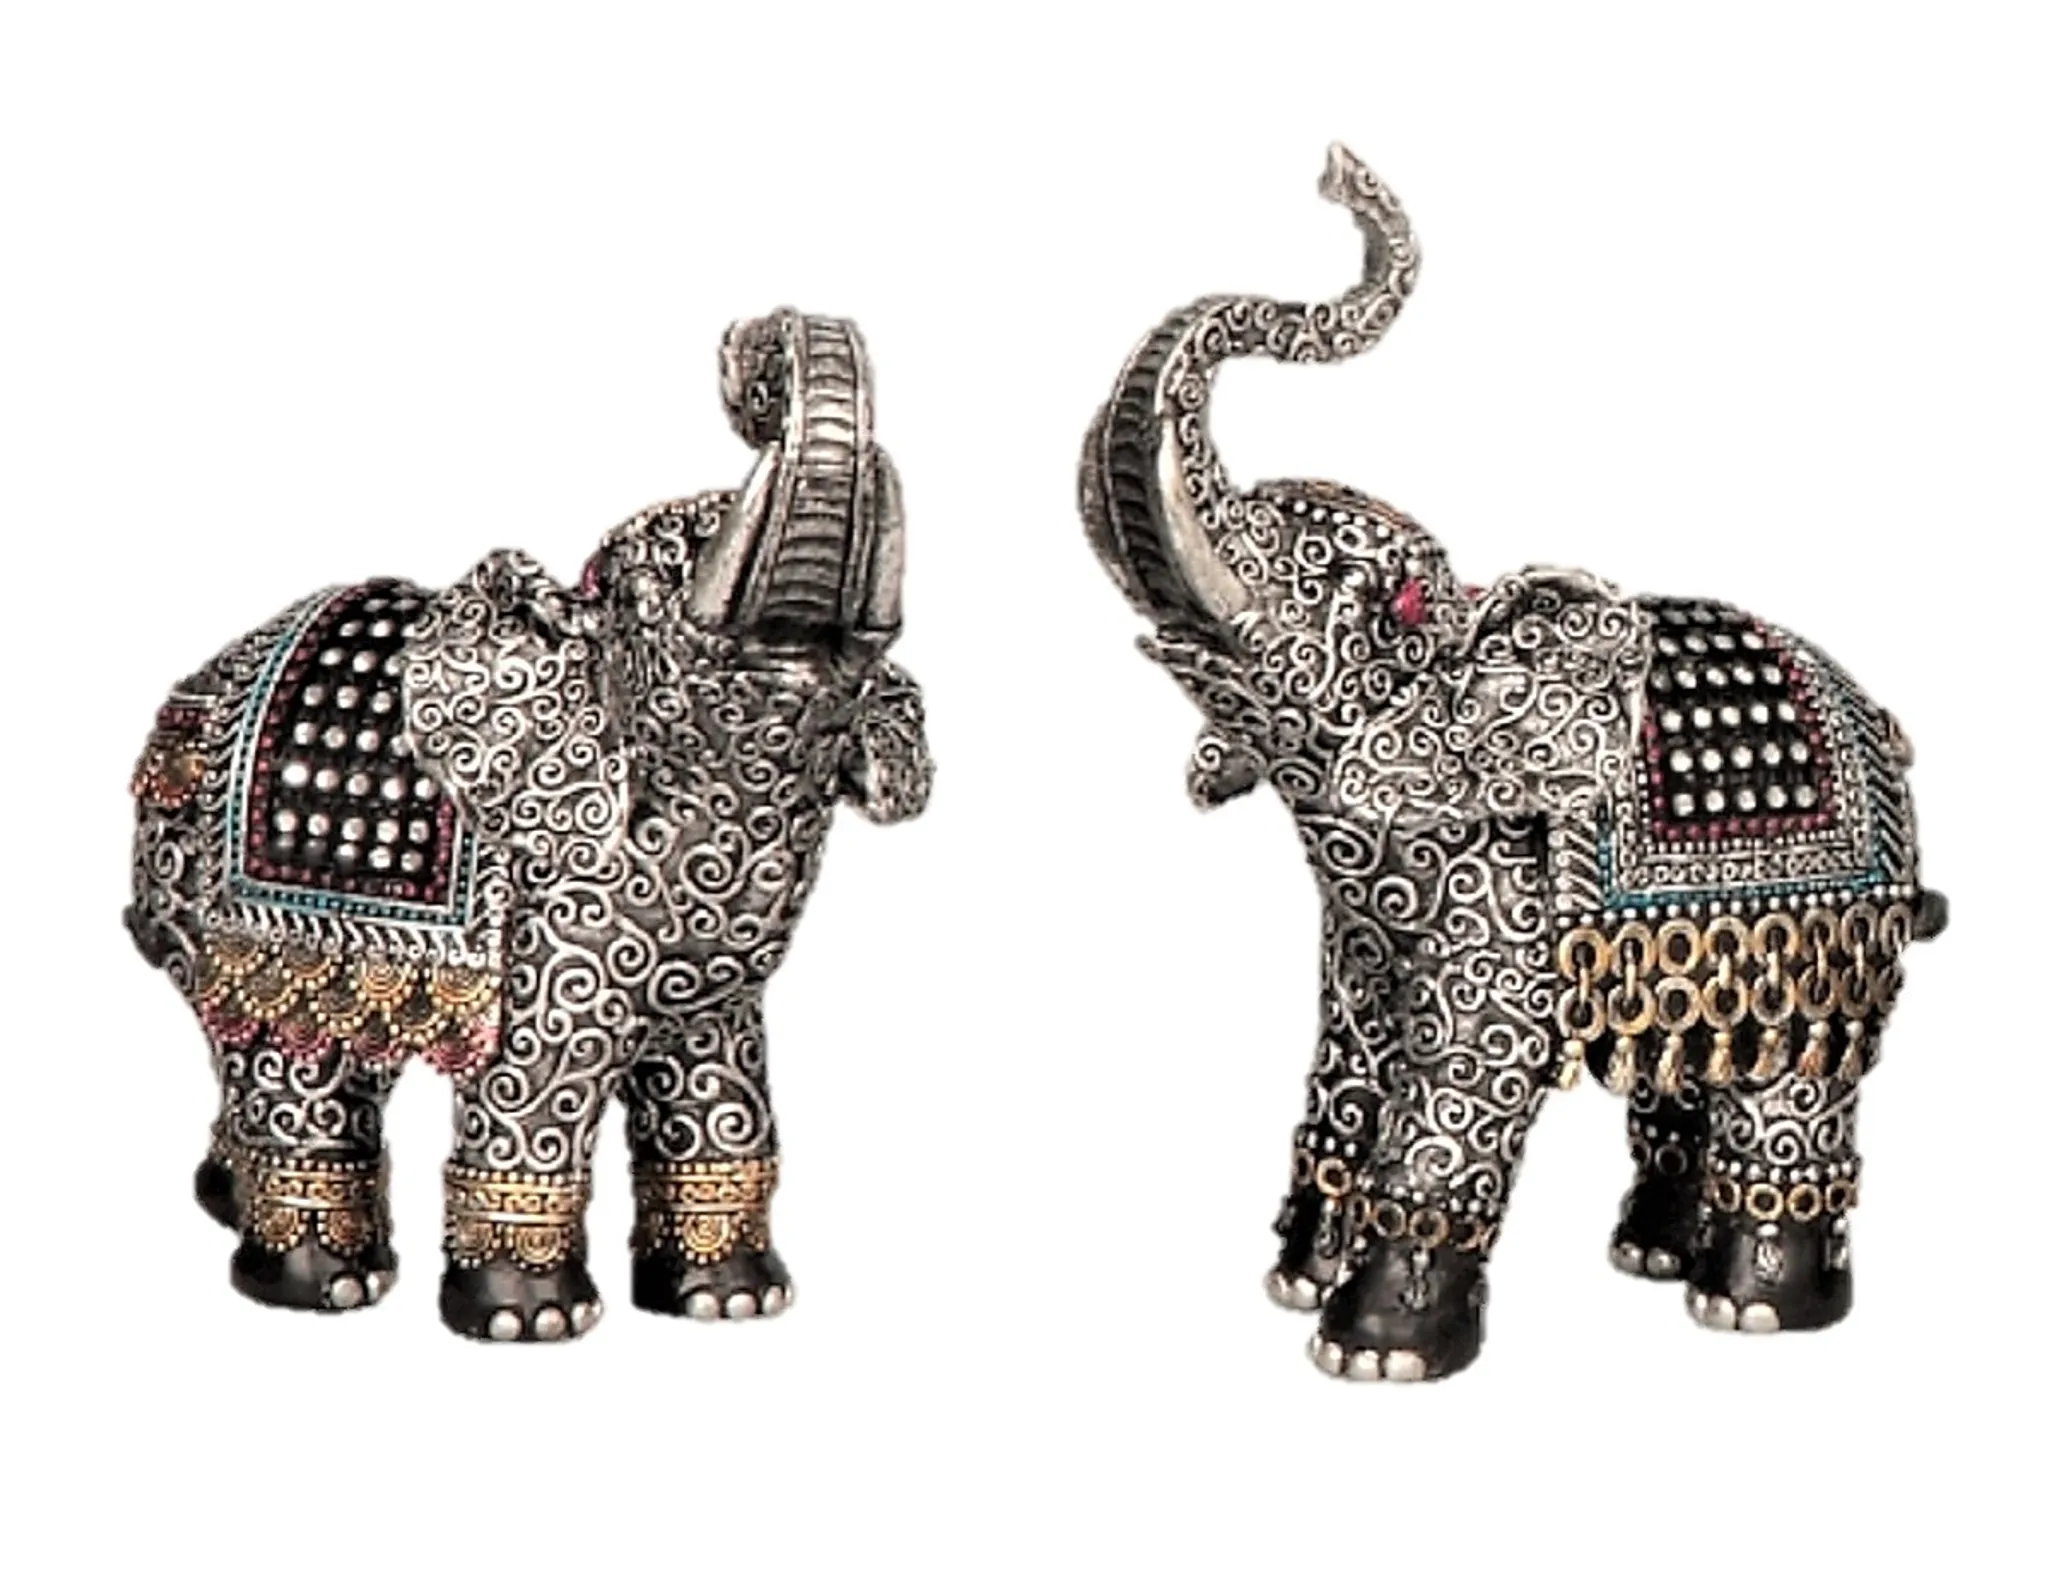 2 Elefanten Dekofiguren cm je 16 asiatische Tierfiguren